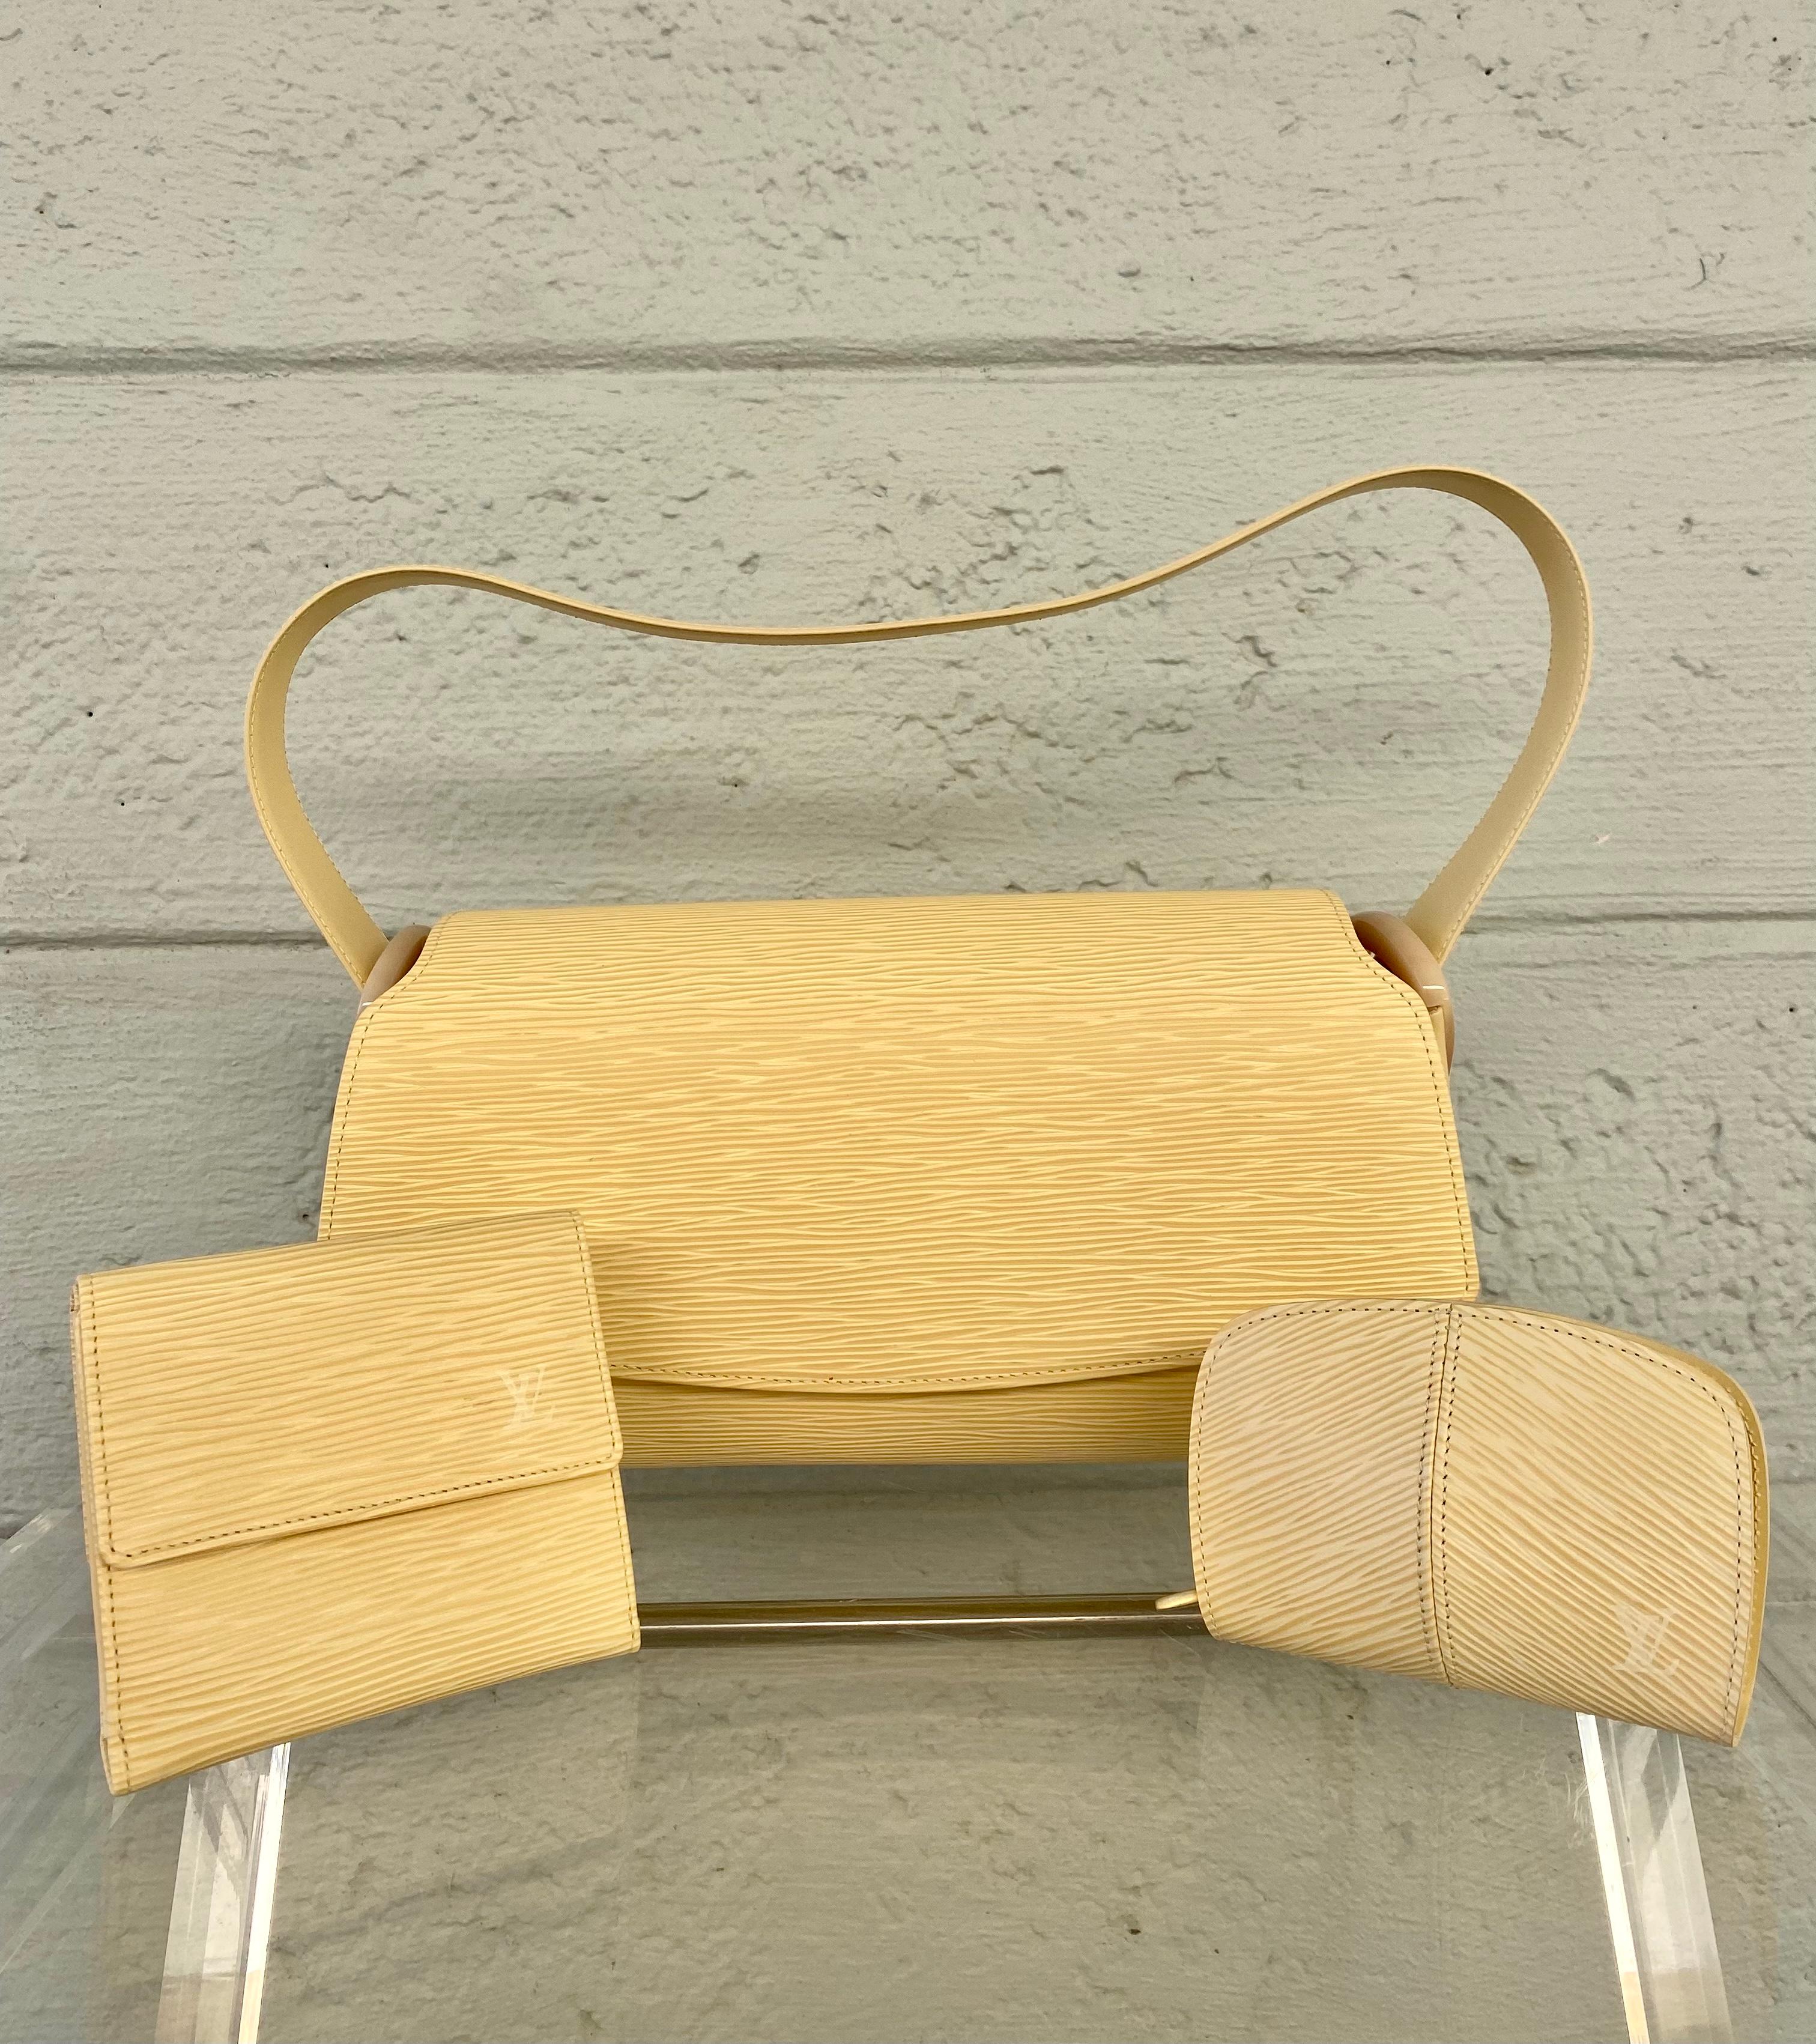 Le nec plus ultra de l'artisanat de luxe en matière de fabrication de sacs à main. La maison Icone Louis Vuitton nous offre toujours des pièces classiques et intemporelles. Ce magnifique sac porte la création intemporelle à un nouveau niveau de